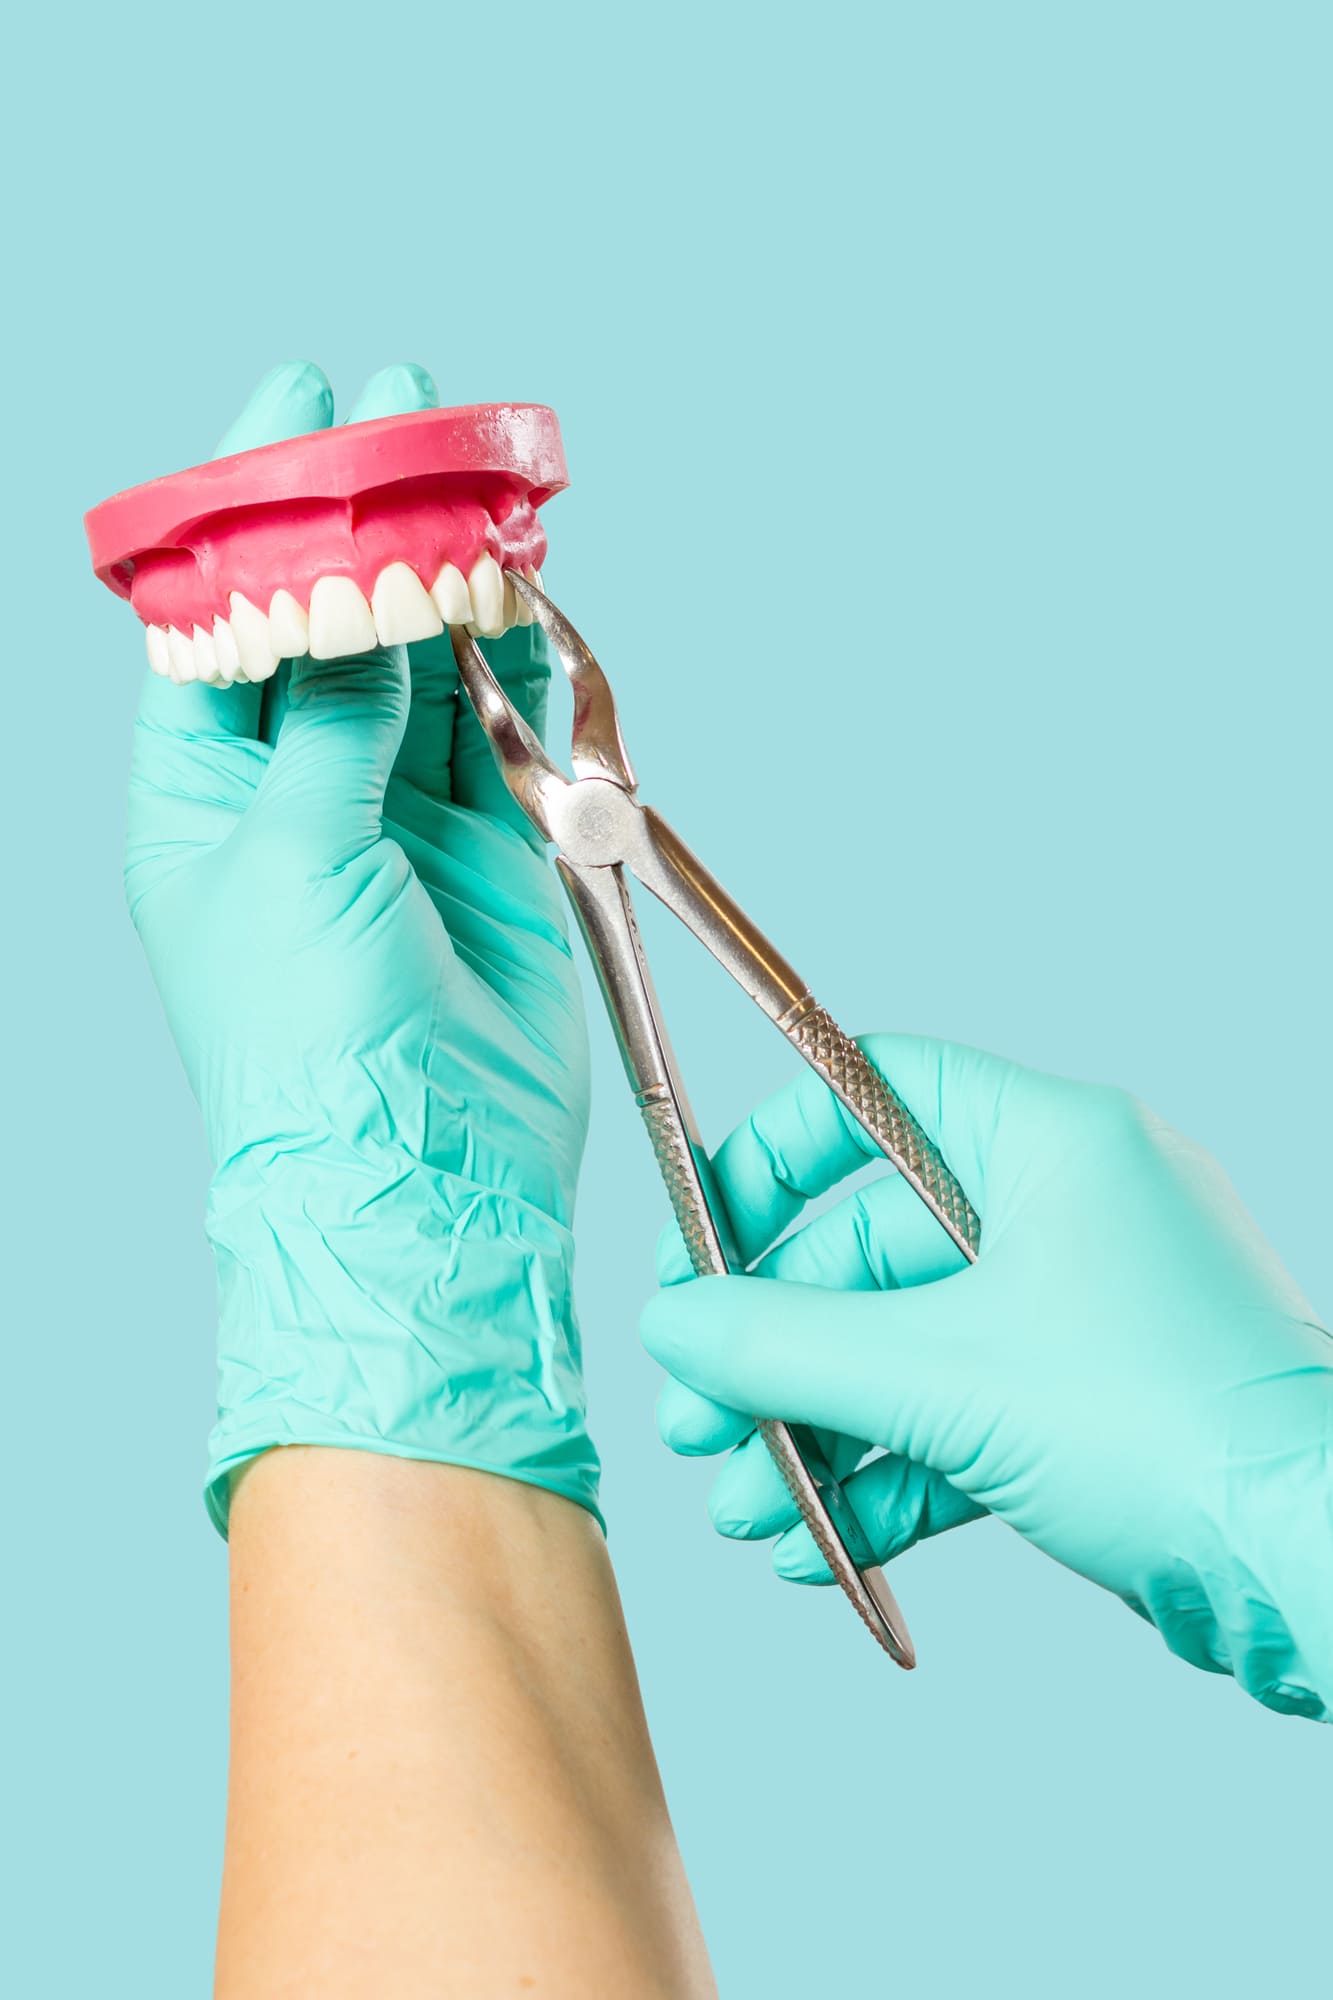 Alicate de How: Un instrumento esencial para la odontología